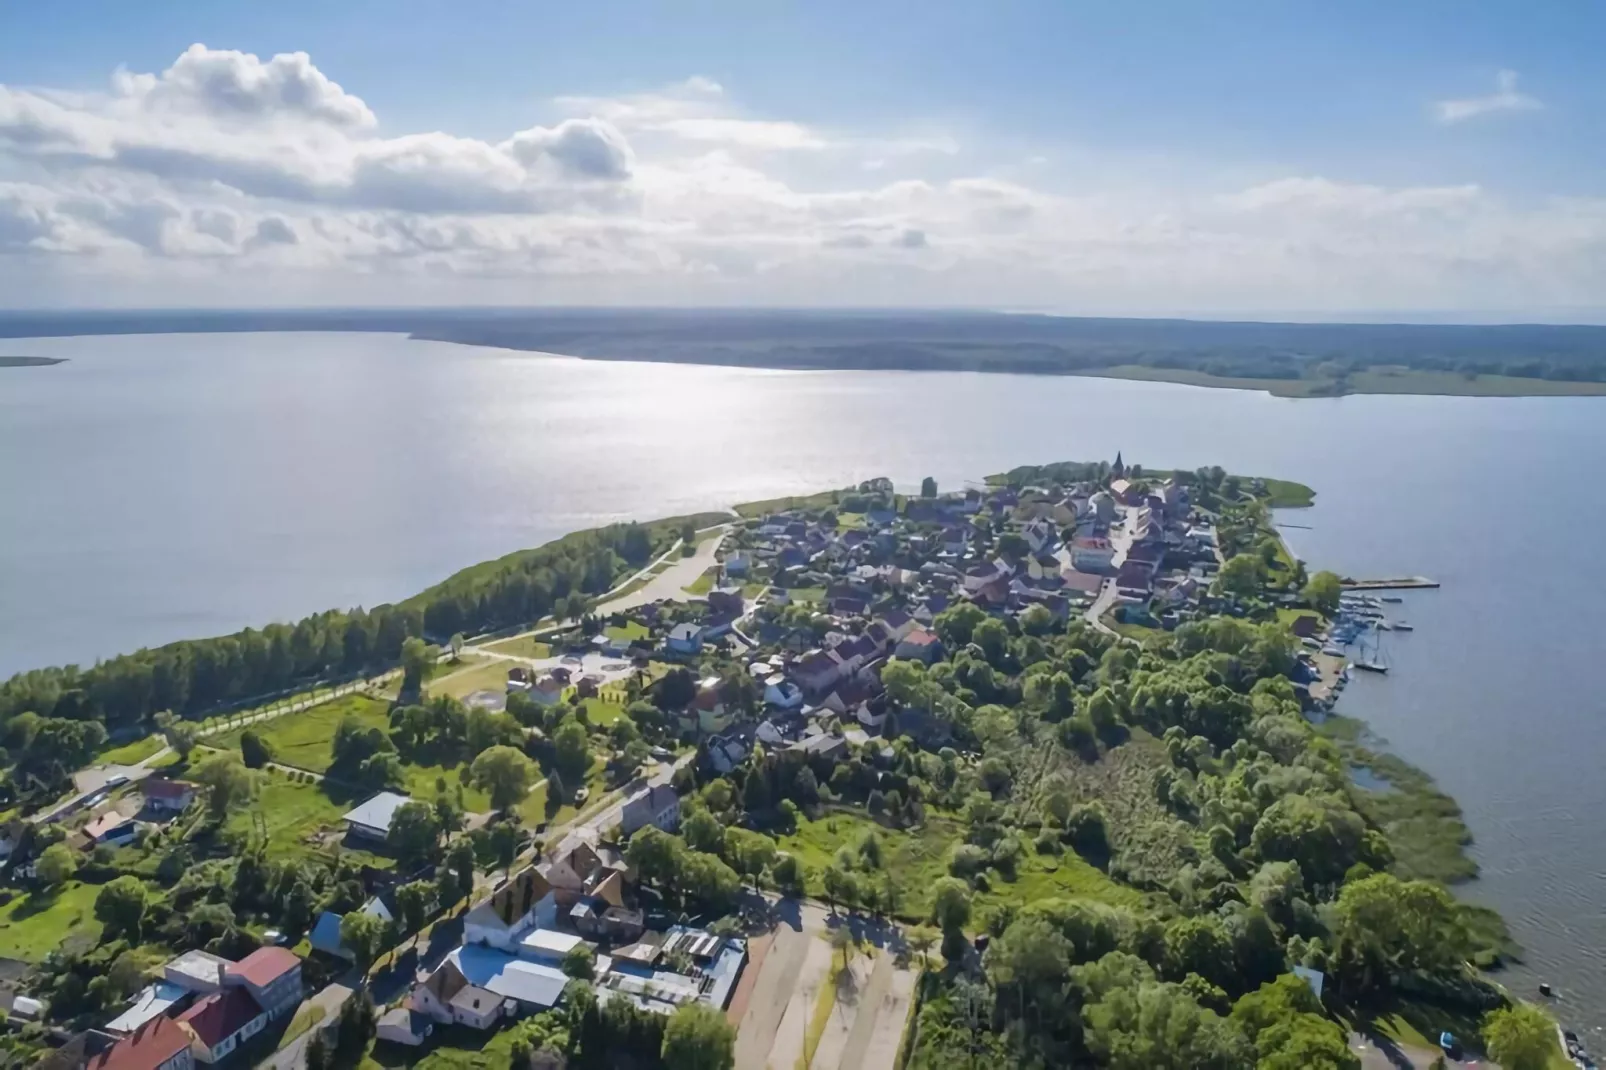 Ferienhaus Seefalke für 10 Personen in Nowe Warpno